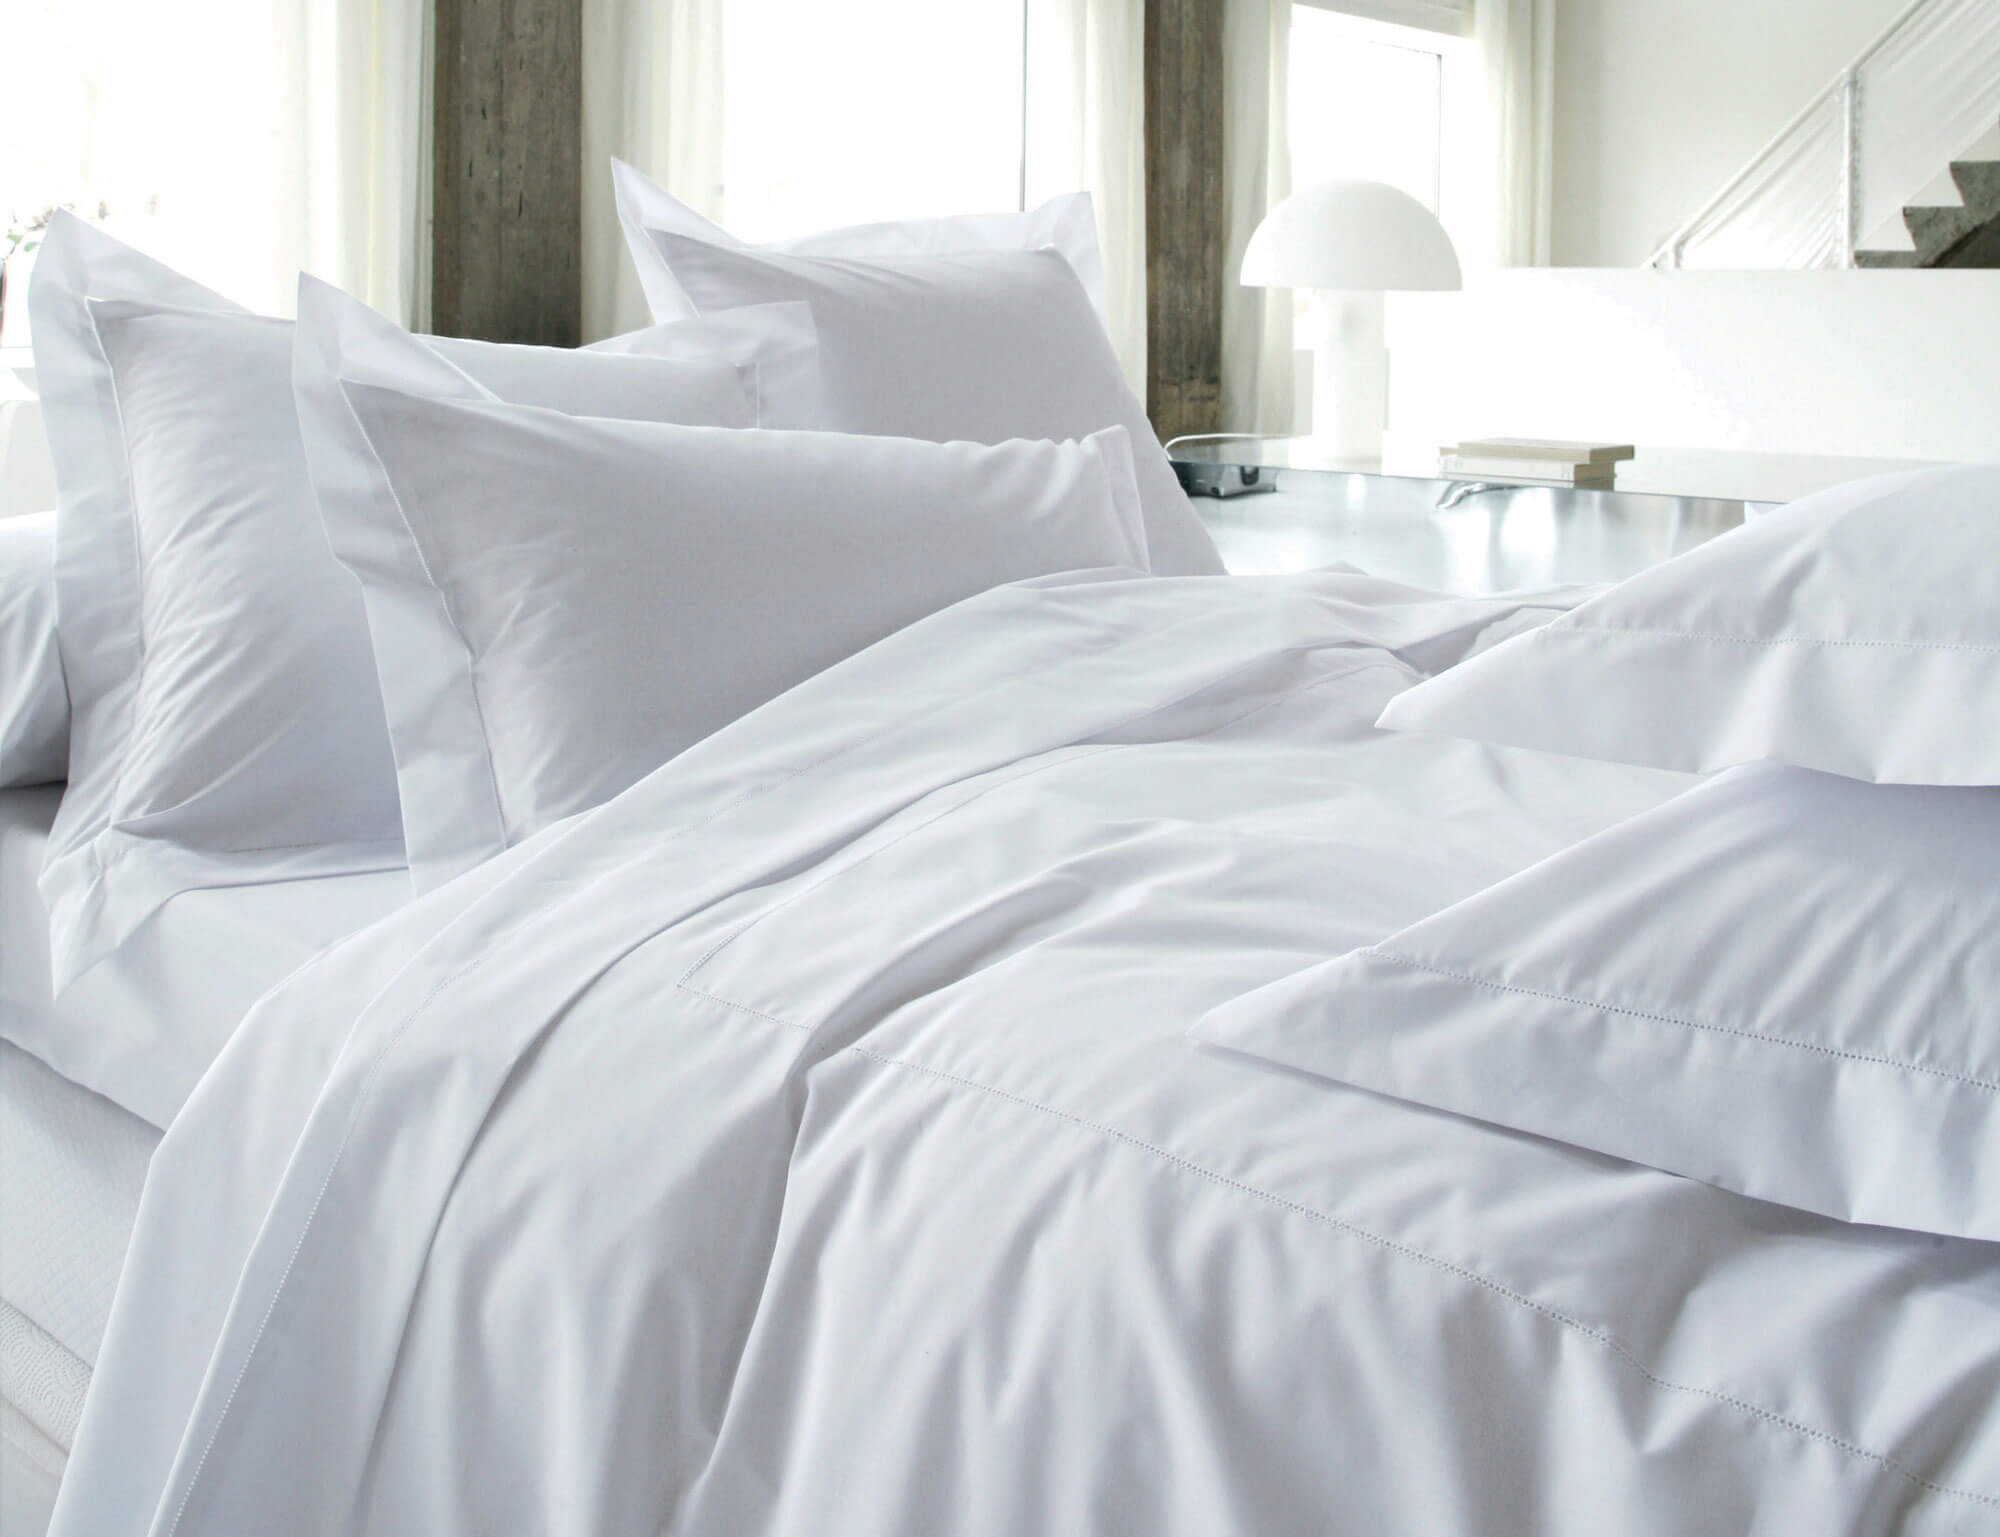 Белое постельное белье как в отелях